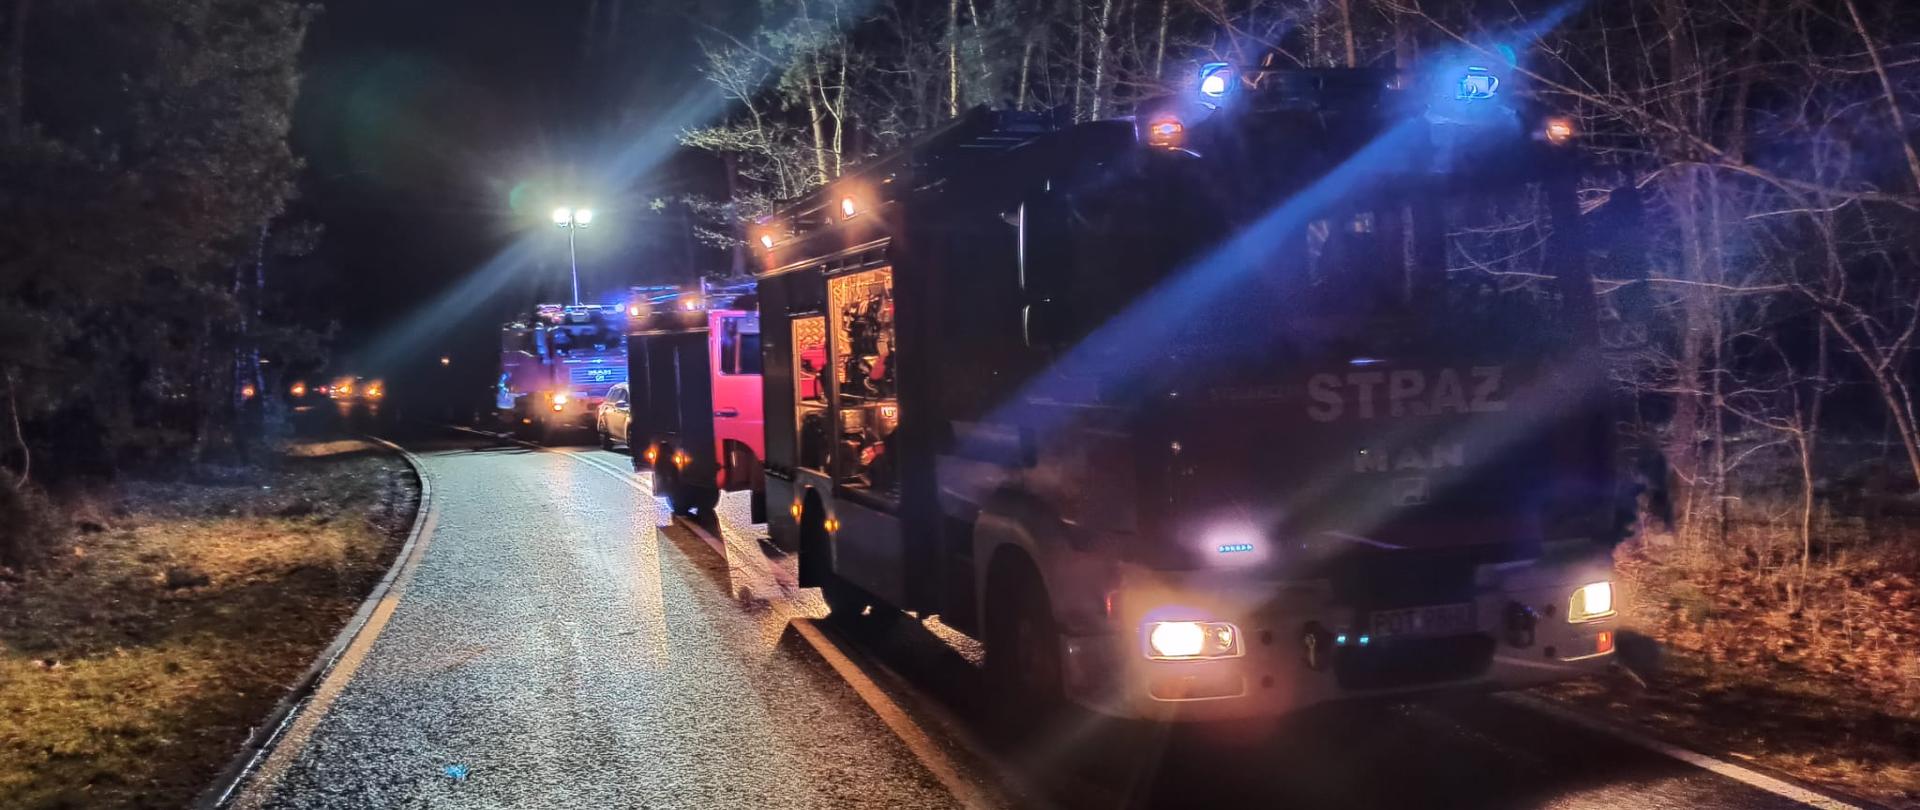 Zdjęcie przedstawia działania ratownicze strażaków podczas kolizji dwóch samochodów osobowych w miejscowości Zalesie. Na zdjęciu widoczne 3 pojazdy ratowniczo - gaśnicze. Zdjęcie wykonane w porze nocnej na drodze.